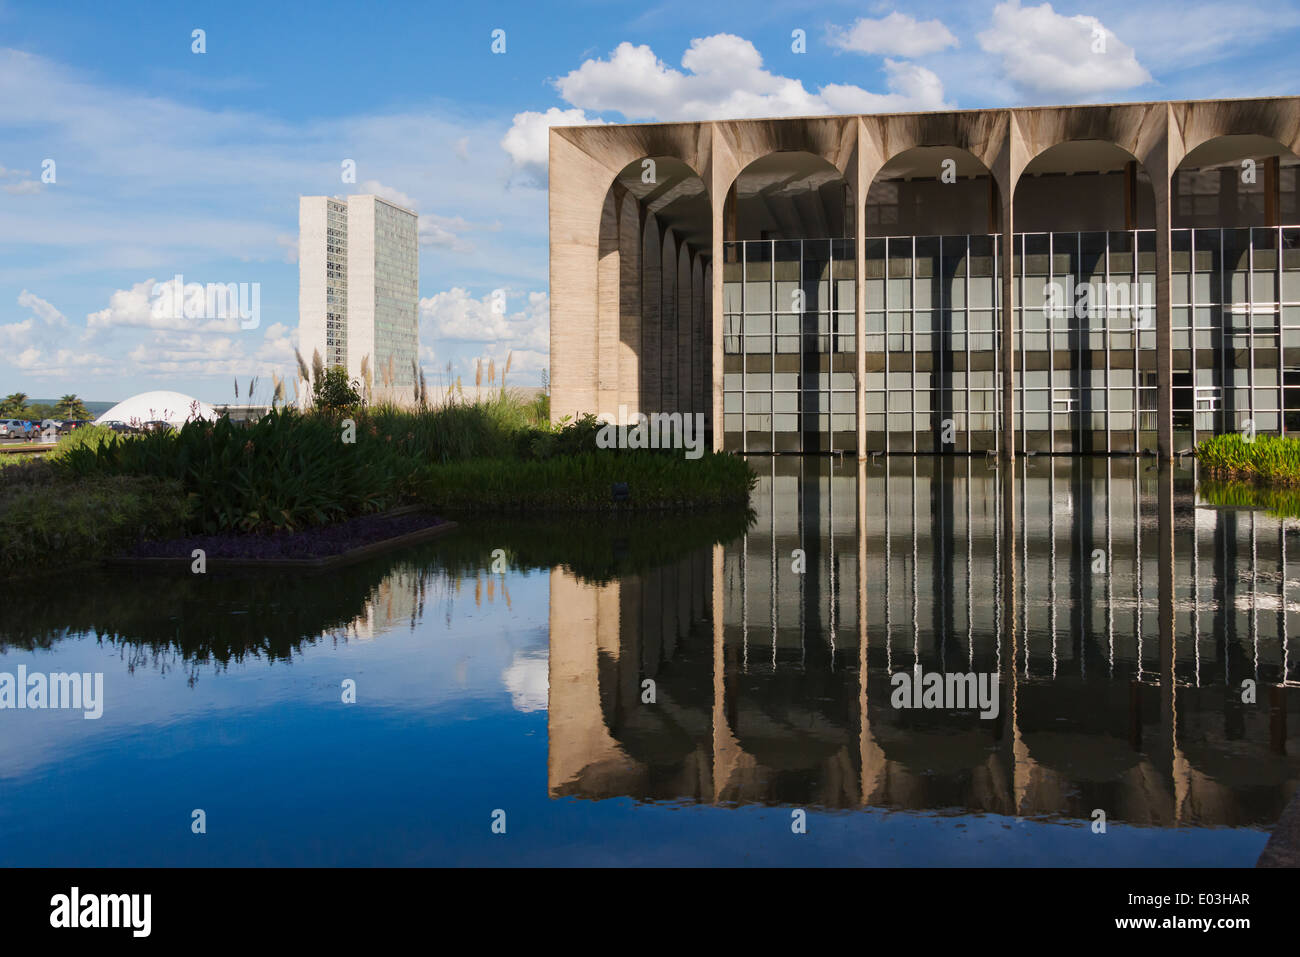 El Palacio de Itamaraty (sede del Ministerio de Relaciones Exteriores de Brasil) y el Congreso Nacional, Brasilia, Brasil Foto de stock